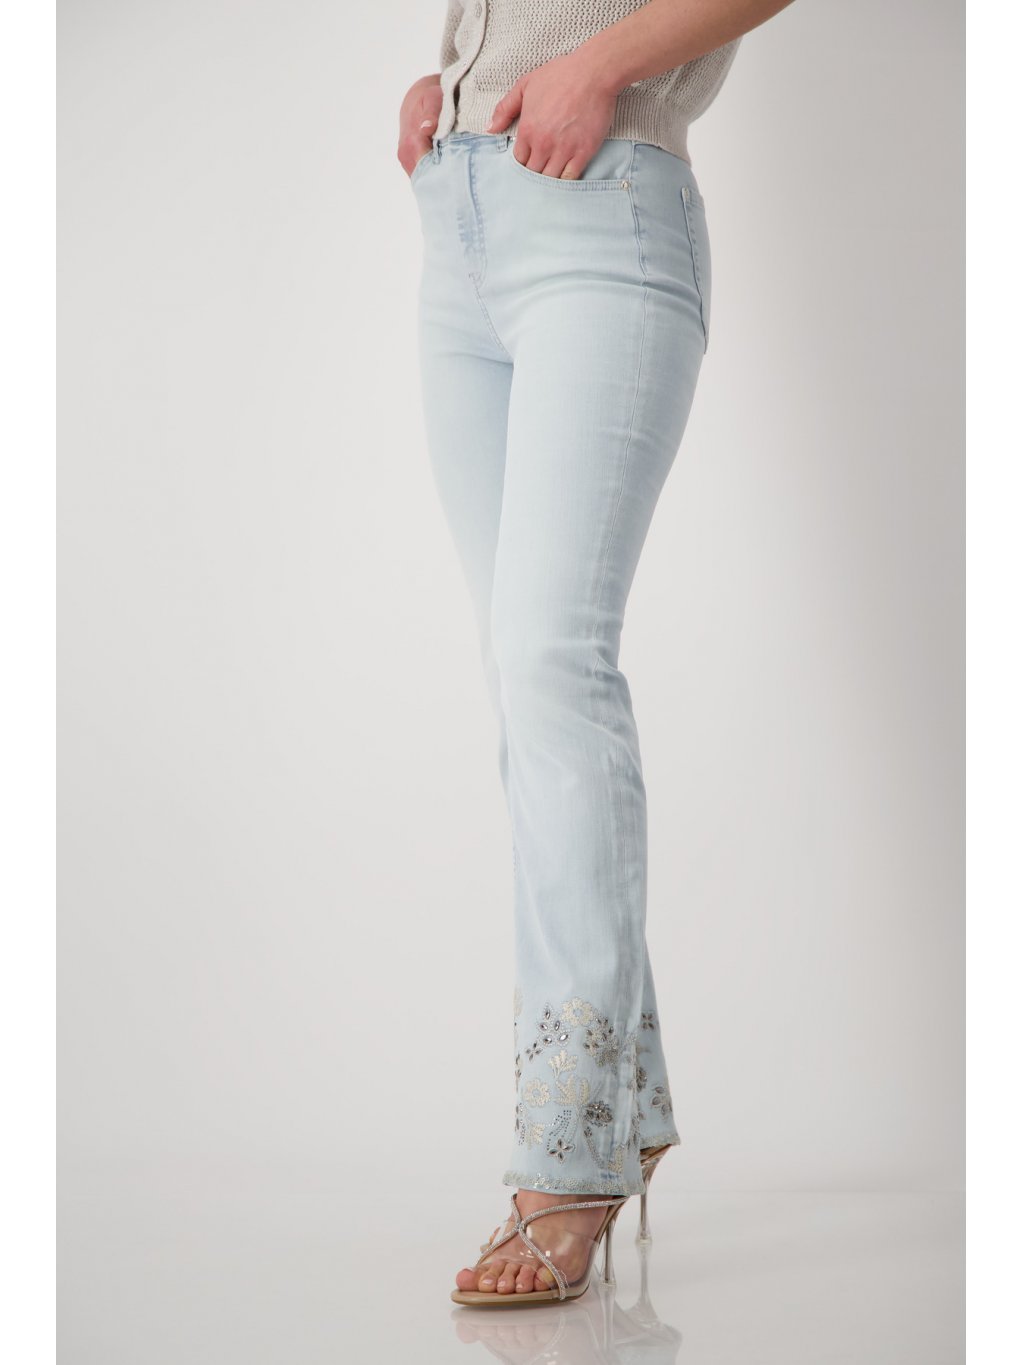 Kalhoty Monari 8956 světlé modré džíny s výšivkou 